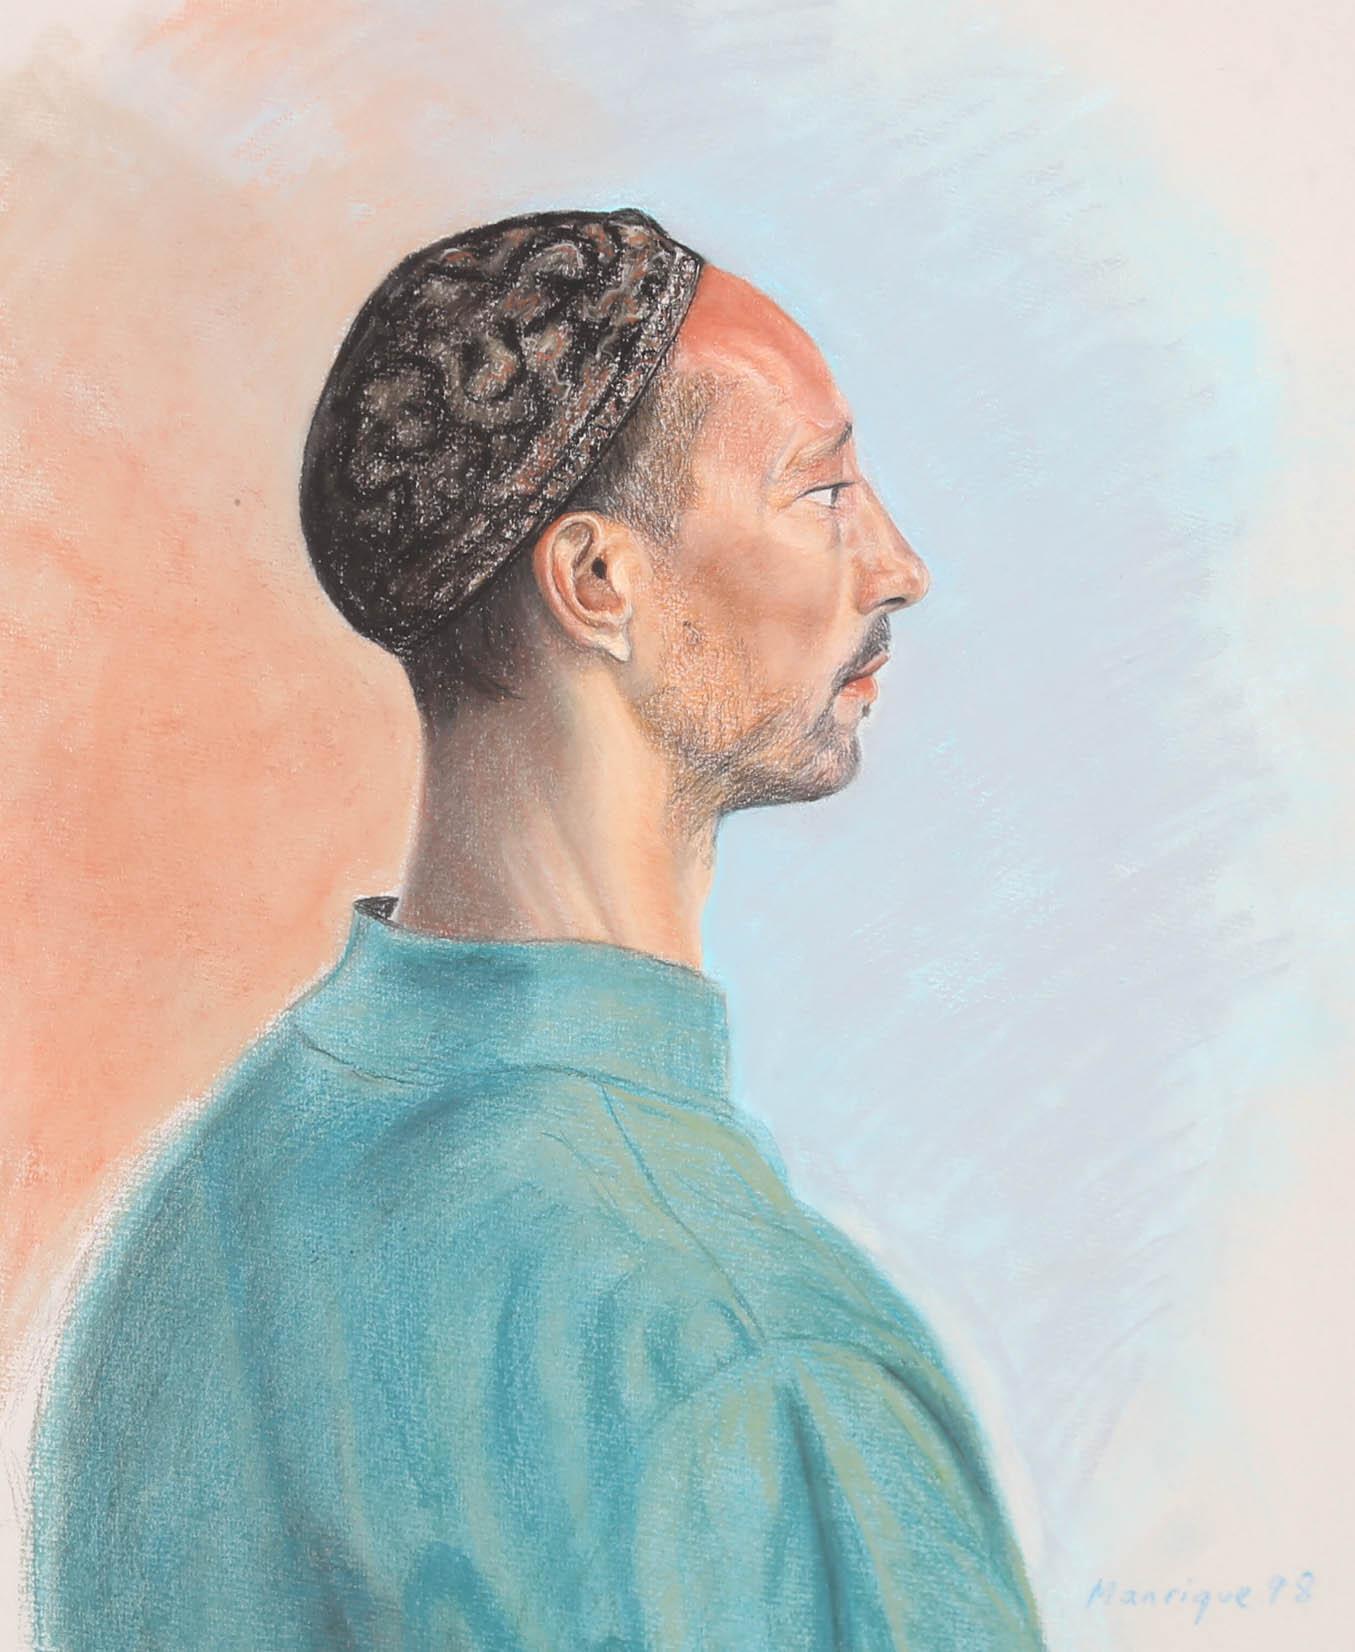 Dieses farbenfrohe Porträt zeigt das Profil eines Mannes, der eine blaue Tunika und einen Kufi trägt. Der Künstler fängt den Mann in feinem Pastell ein und hebt die hyperrealistischen Töne in seinem Gesicht und seiner Kleidung hervor. Er ist vor